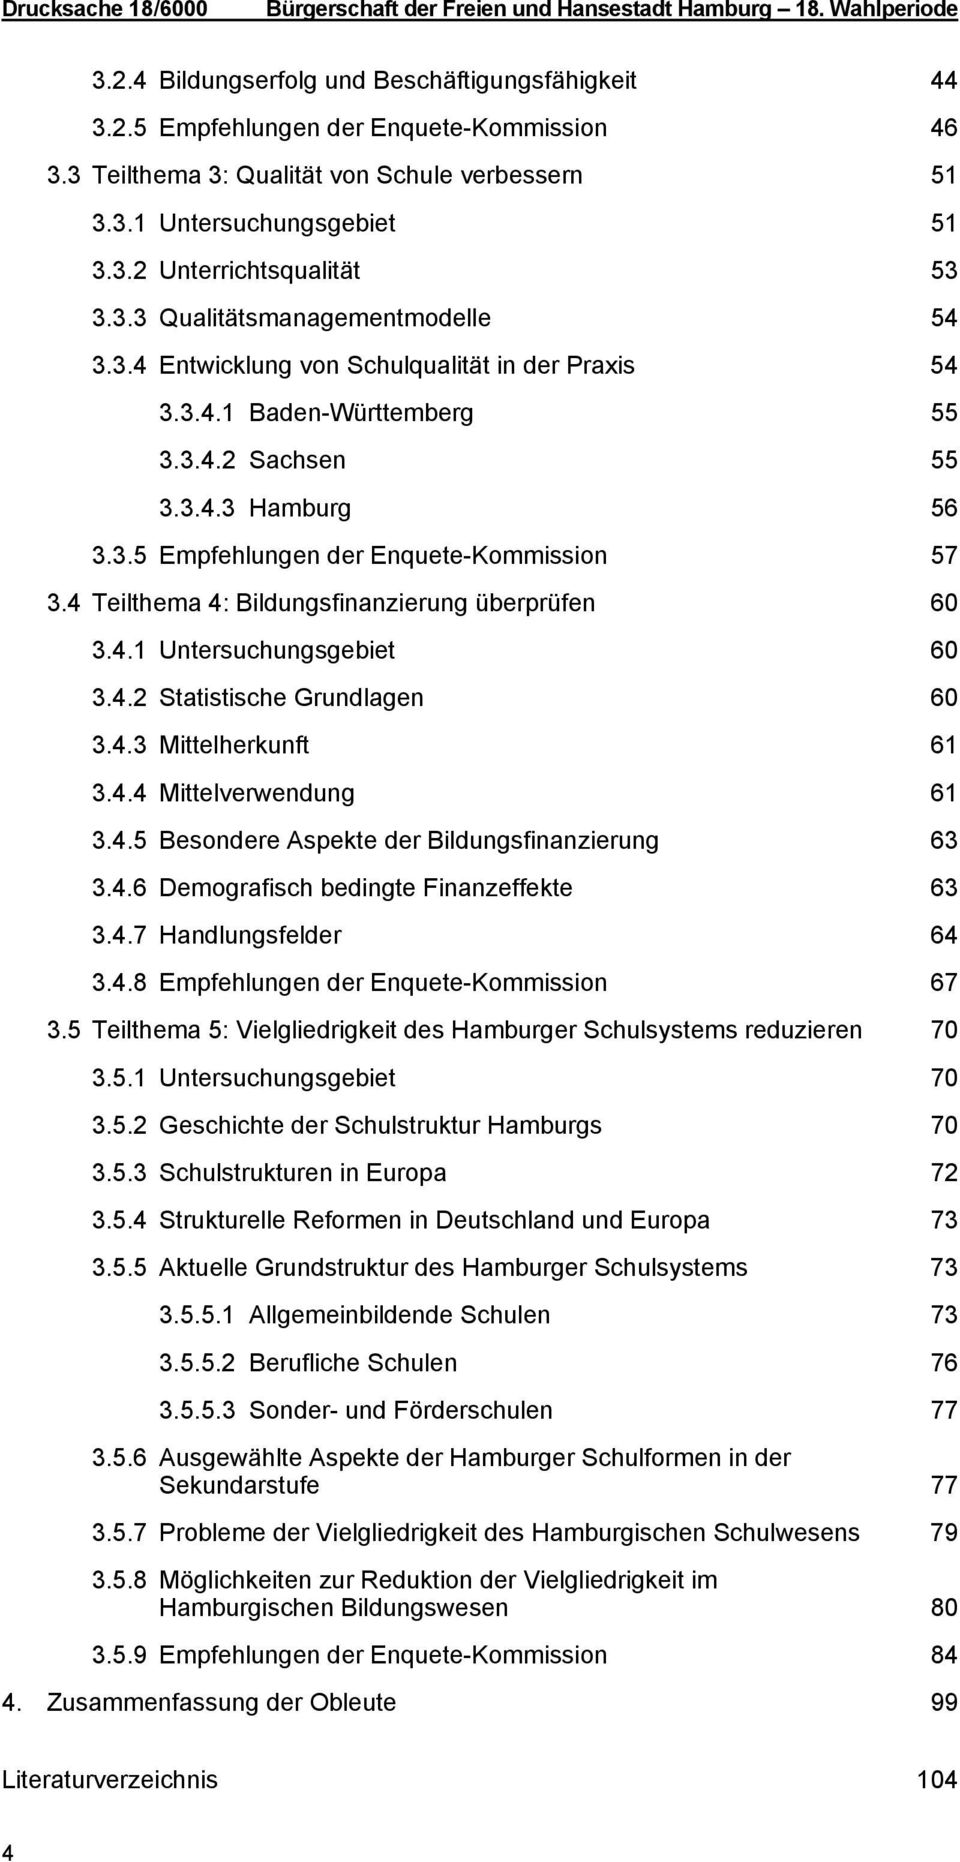 3.4.2 Sachsen 55 3.3.4.3 Hamburg 56 3.3.5 Empfehlungen der Enquete-Kommission 57 3.4 Teilthema 4: Bildungsfinanzierung überprüfen 60 3.4.1 Untersuchungsgebiet 60 3.4.2 Statistische Grundlagen 60 3.4.3 Mittelherkunft 61 3.